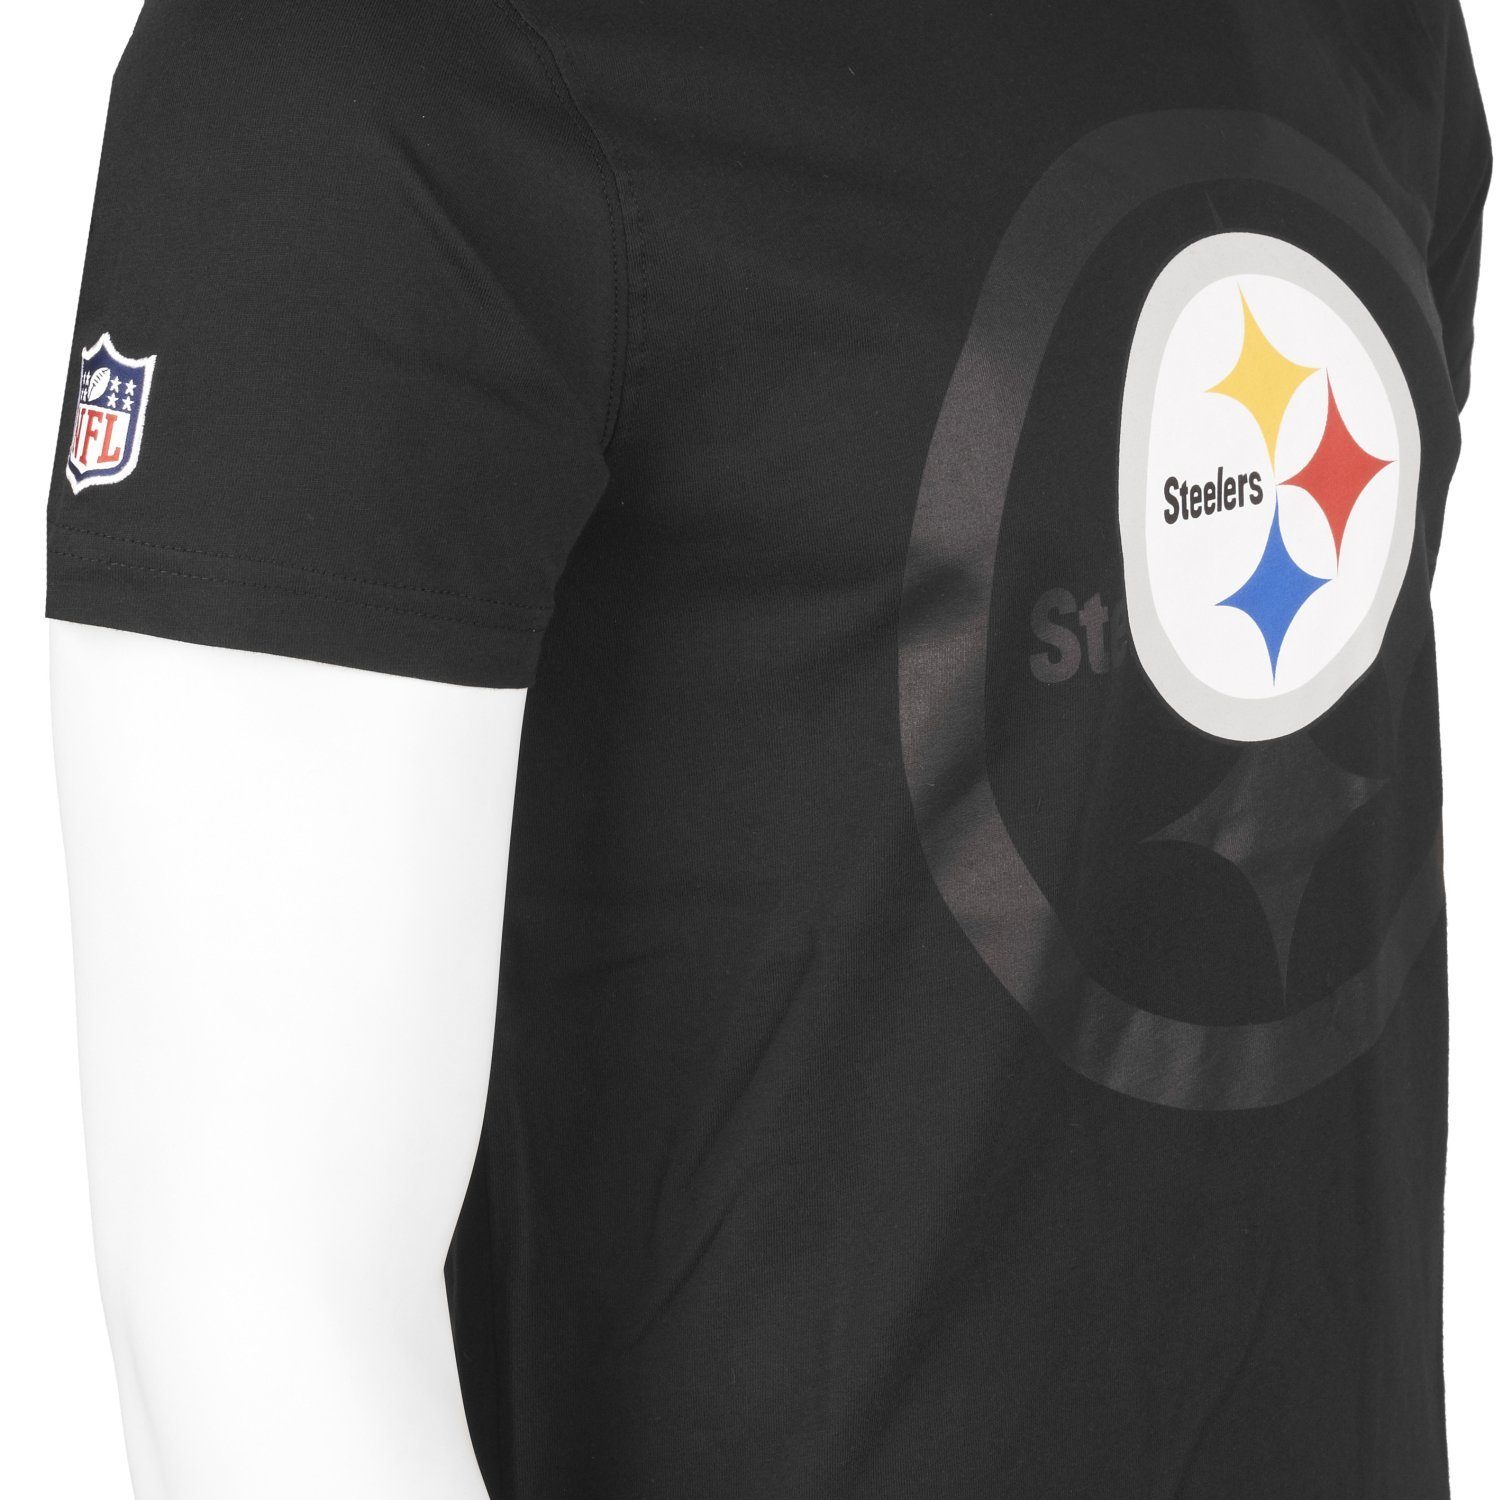 Print-Shirt Era NFL Pittsburgh 2.0 Steelers New